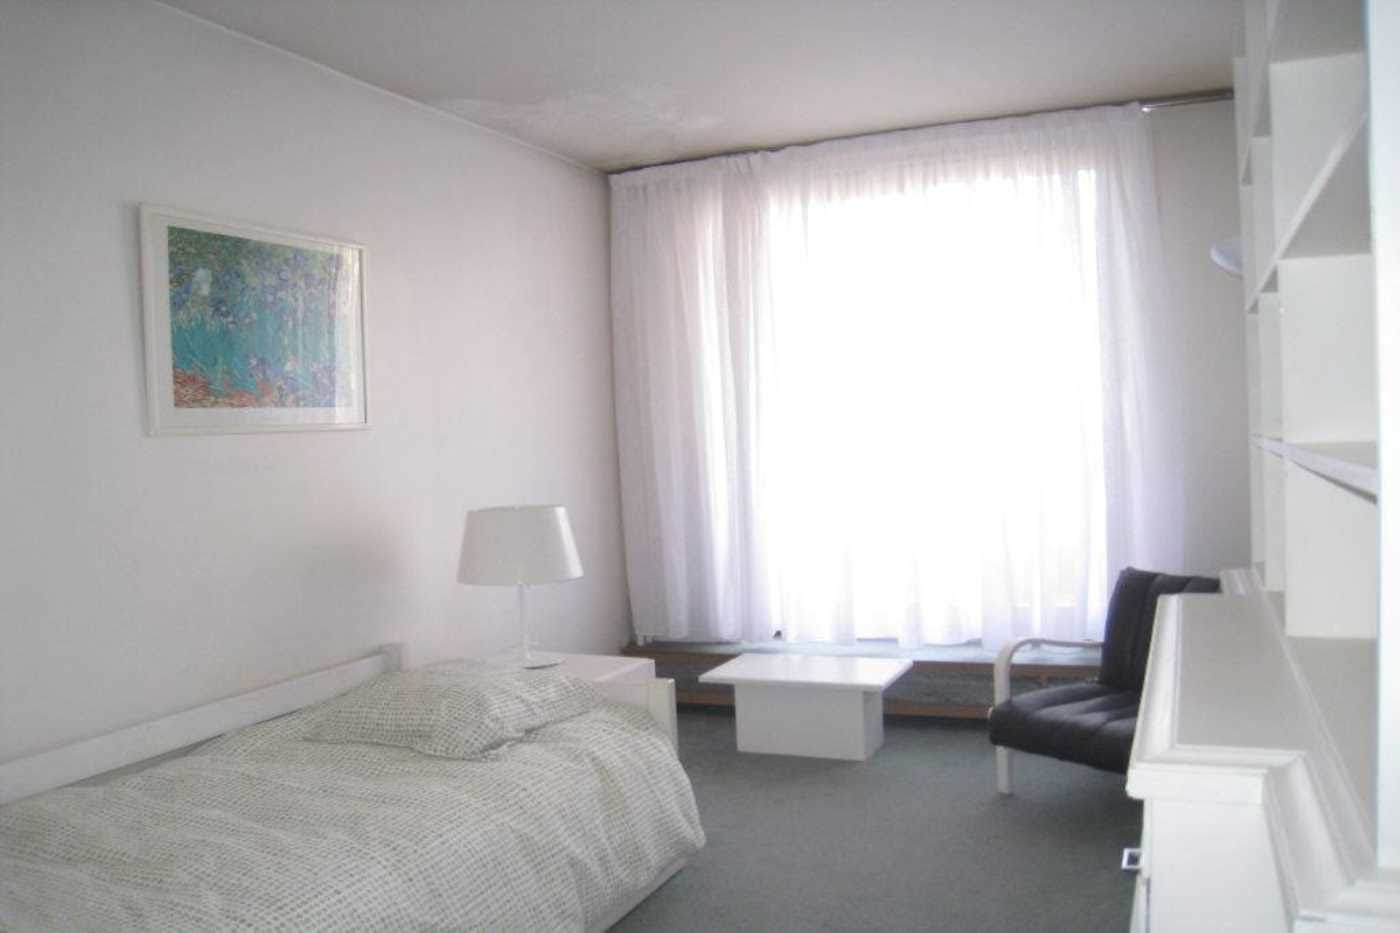 Location appartement meublé 5 pièces 110 m2